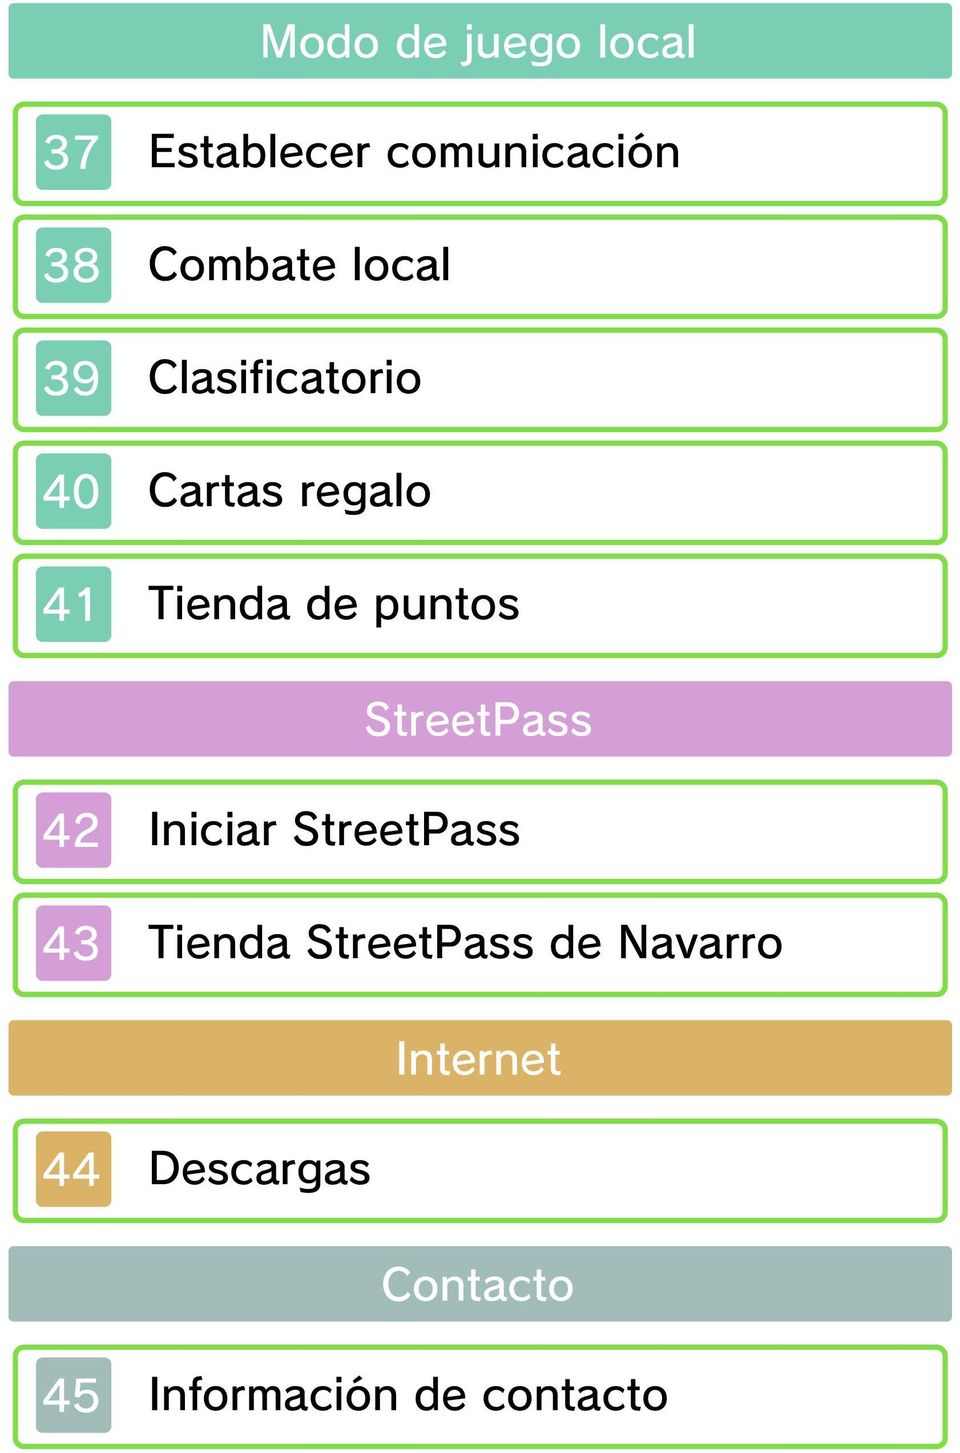 StreetPass 42 Iniciar StreetPass 43 Tienda StreetPass de